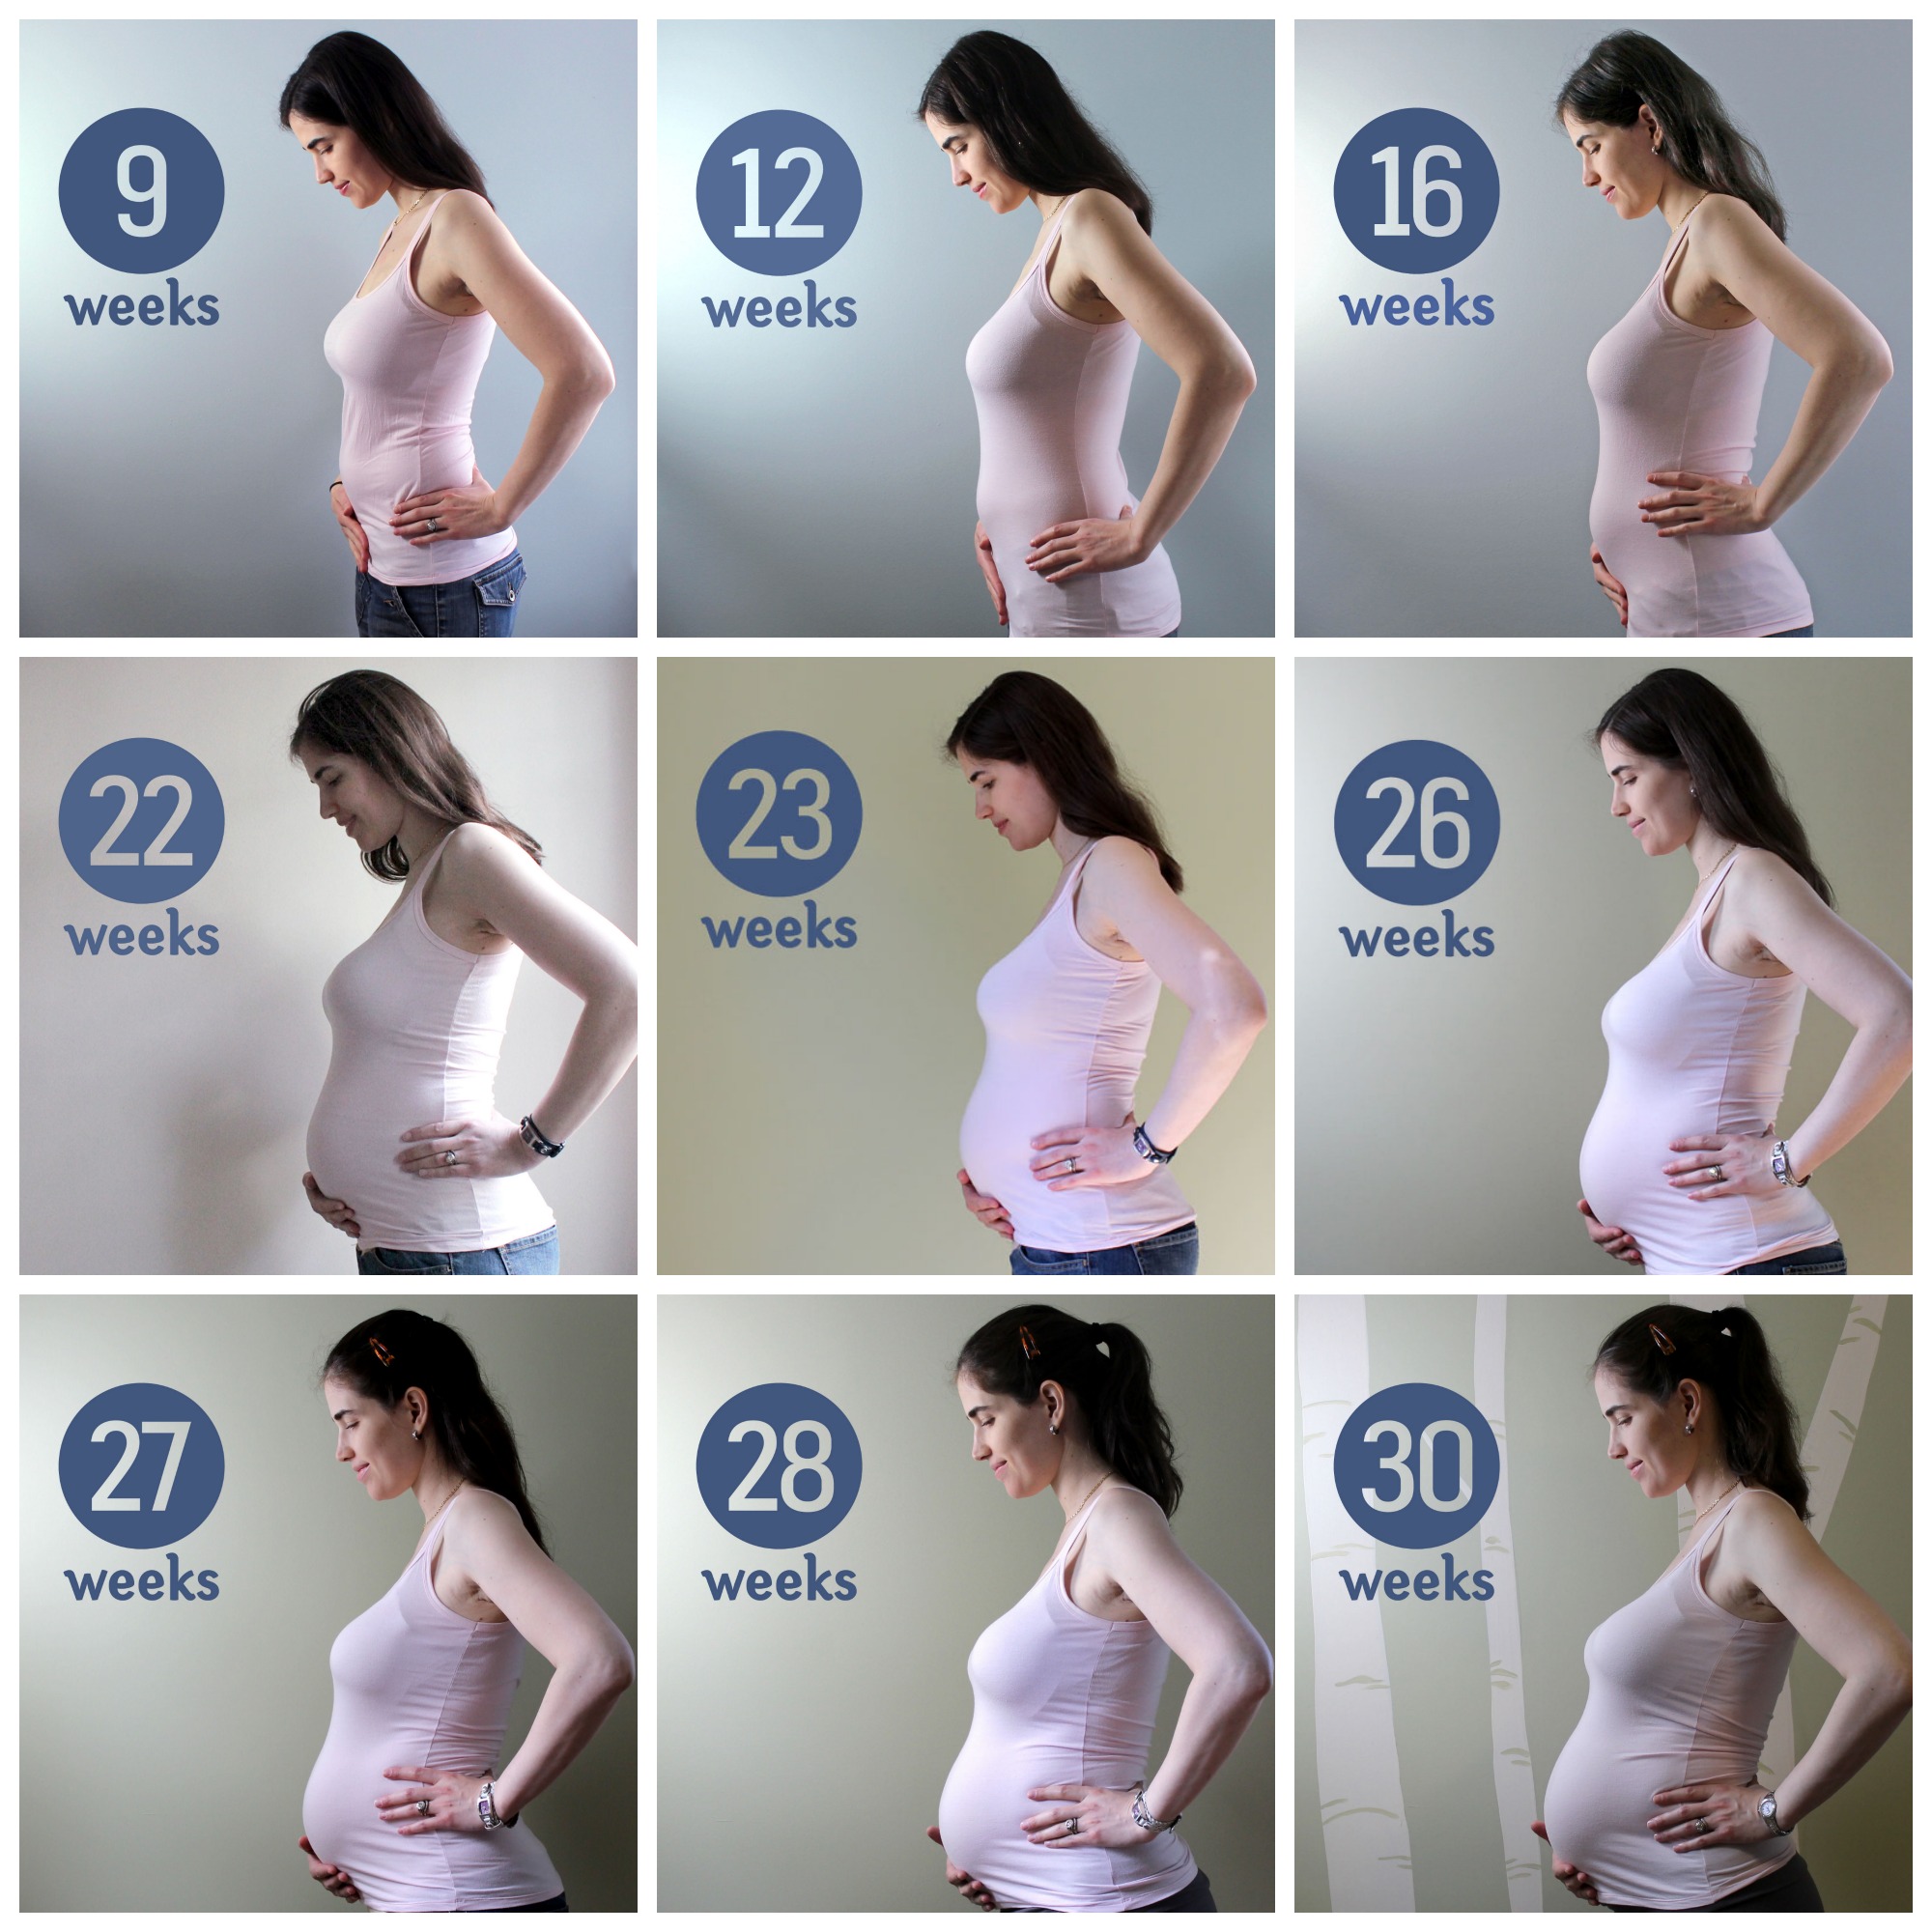 во сколько раз увеличивается грудь во время беременности фото 85